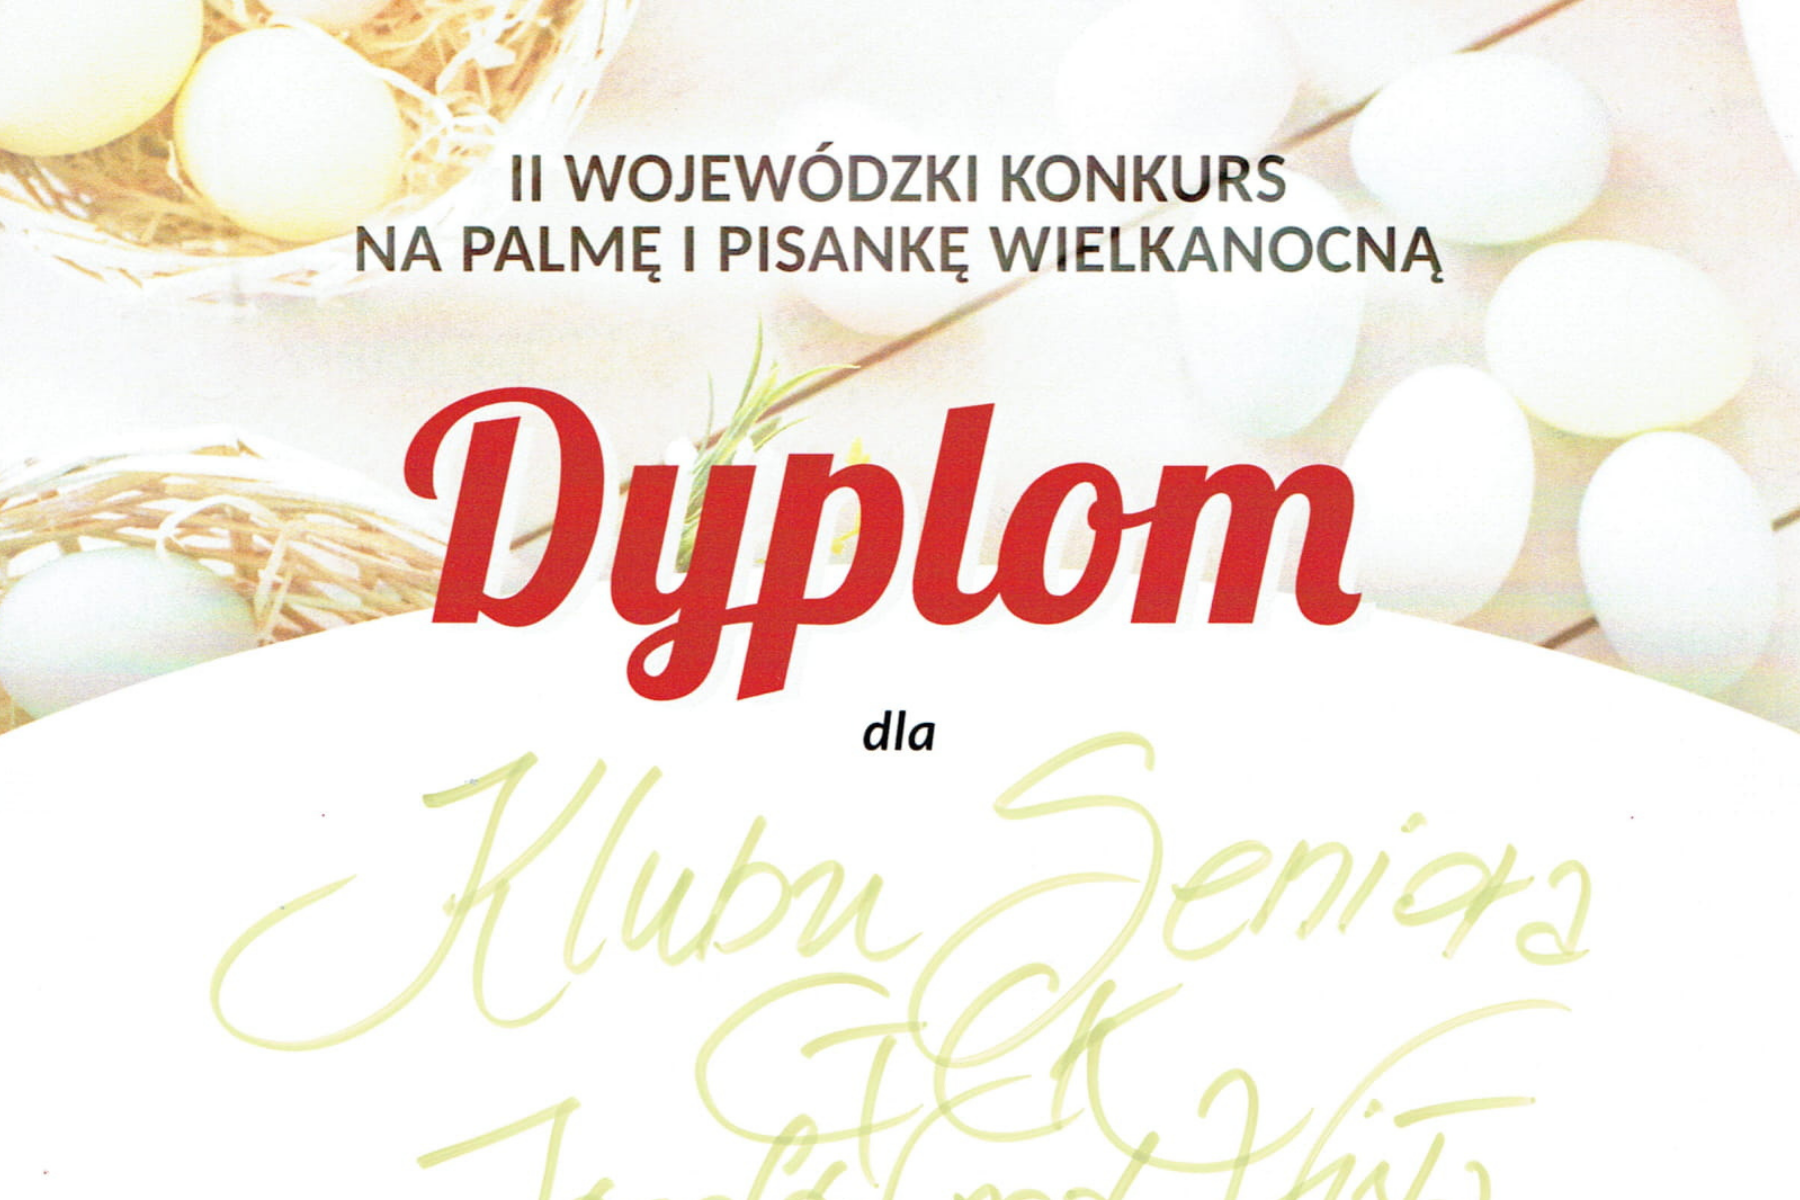 Wojewódzki Ośrodek Kultury w Lublinie przyznał dyplomy za udział w  II Wojewódzkim Konkursie na Palmę i Pisankę Wielkanocną